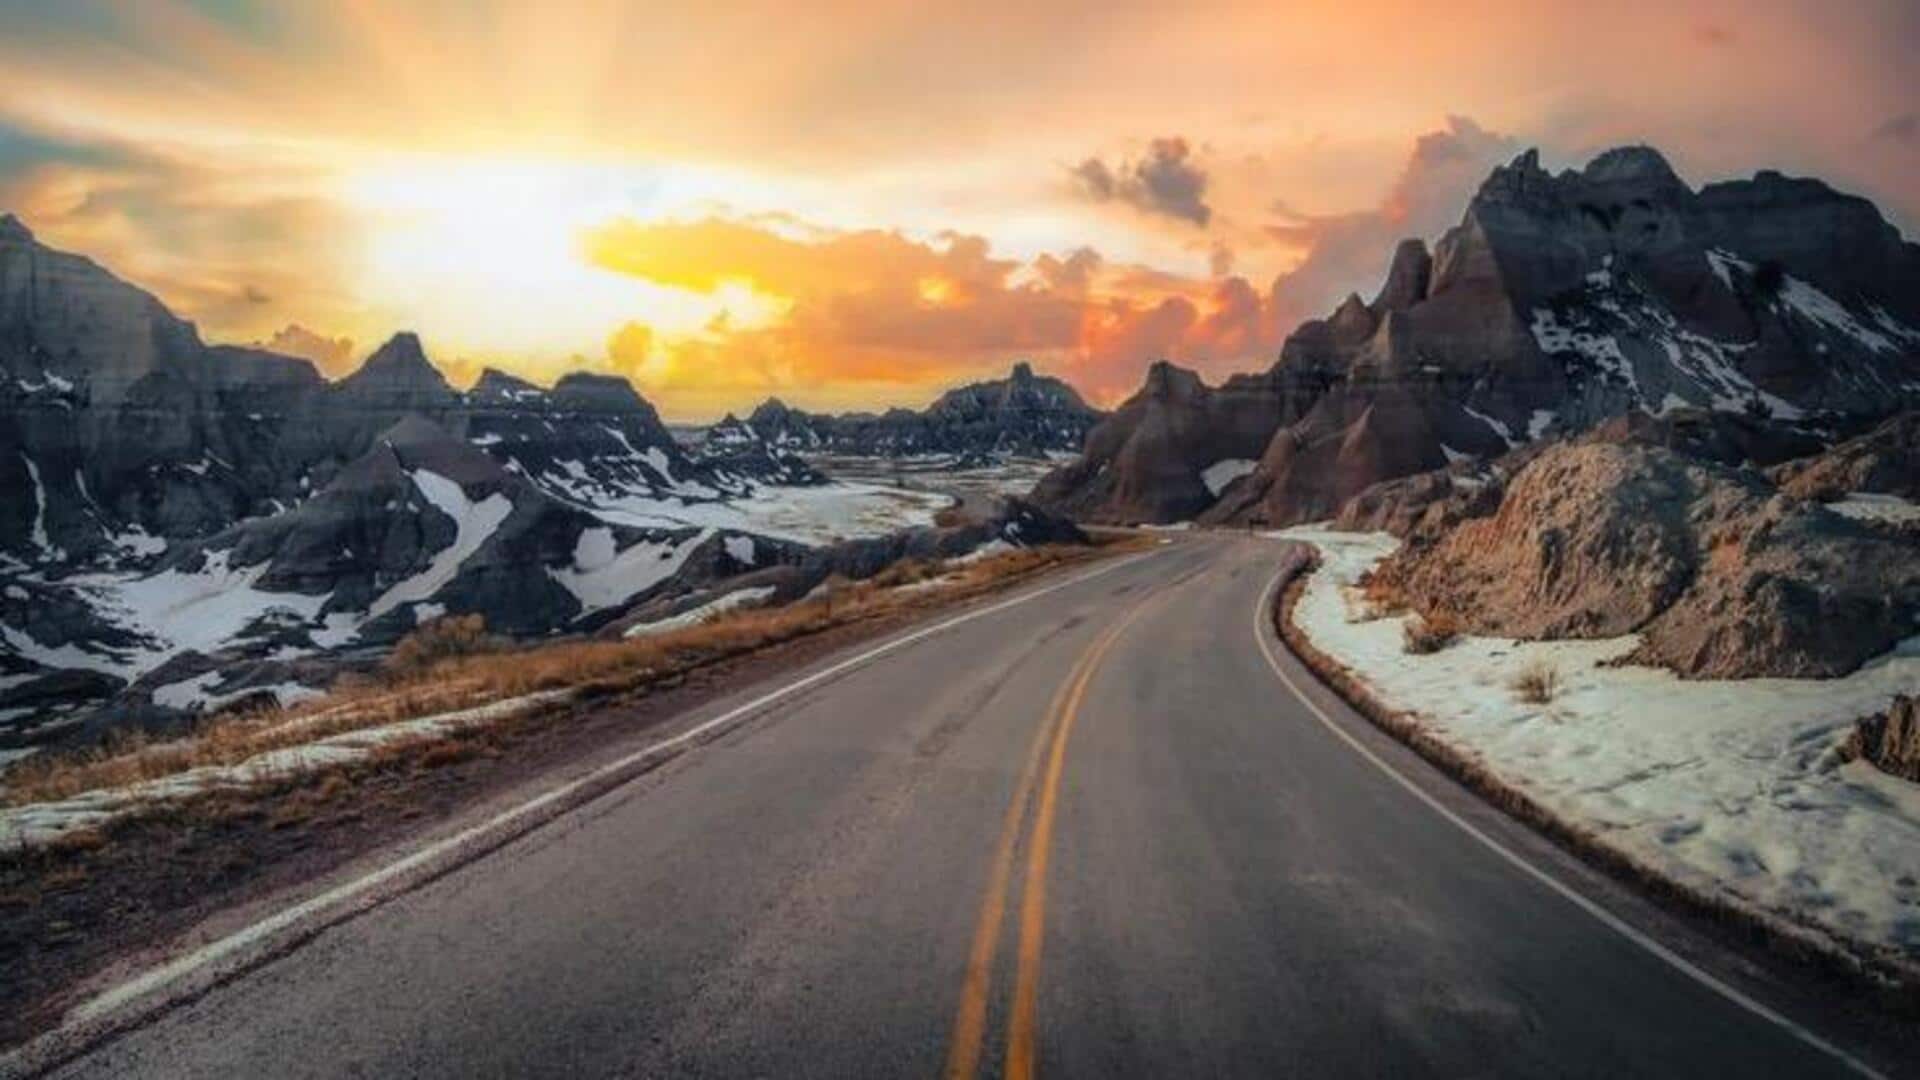 सर्दियों में रोड ट्रिप के लिए चुनें ये रास्ते, यादगार बन जाएगी यात्रा 